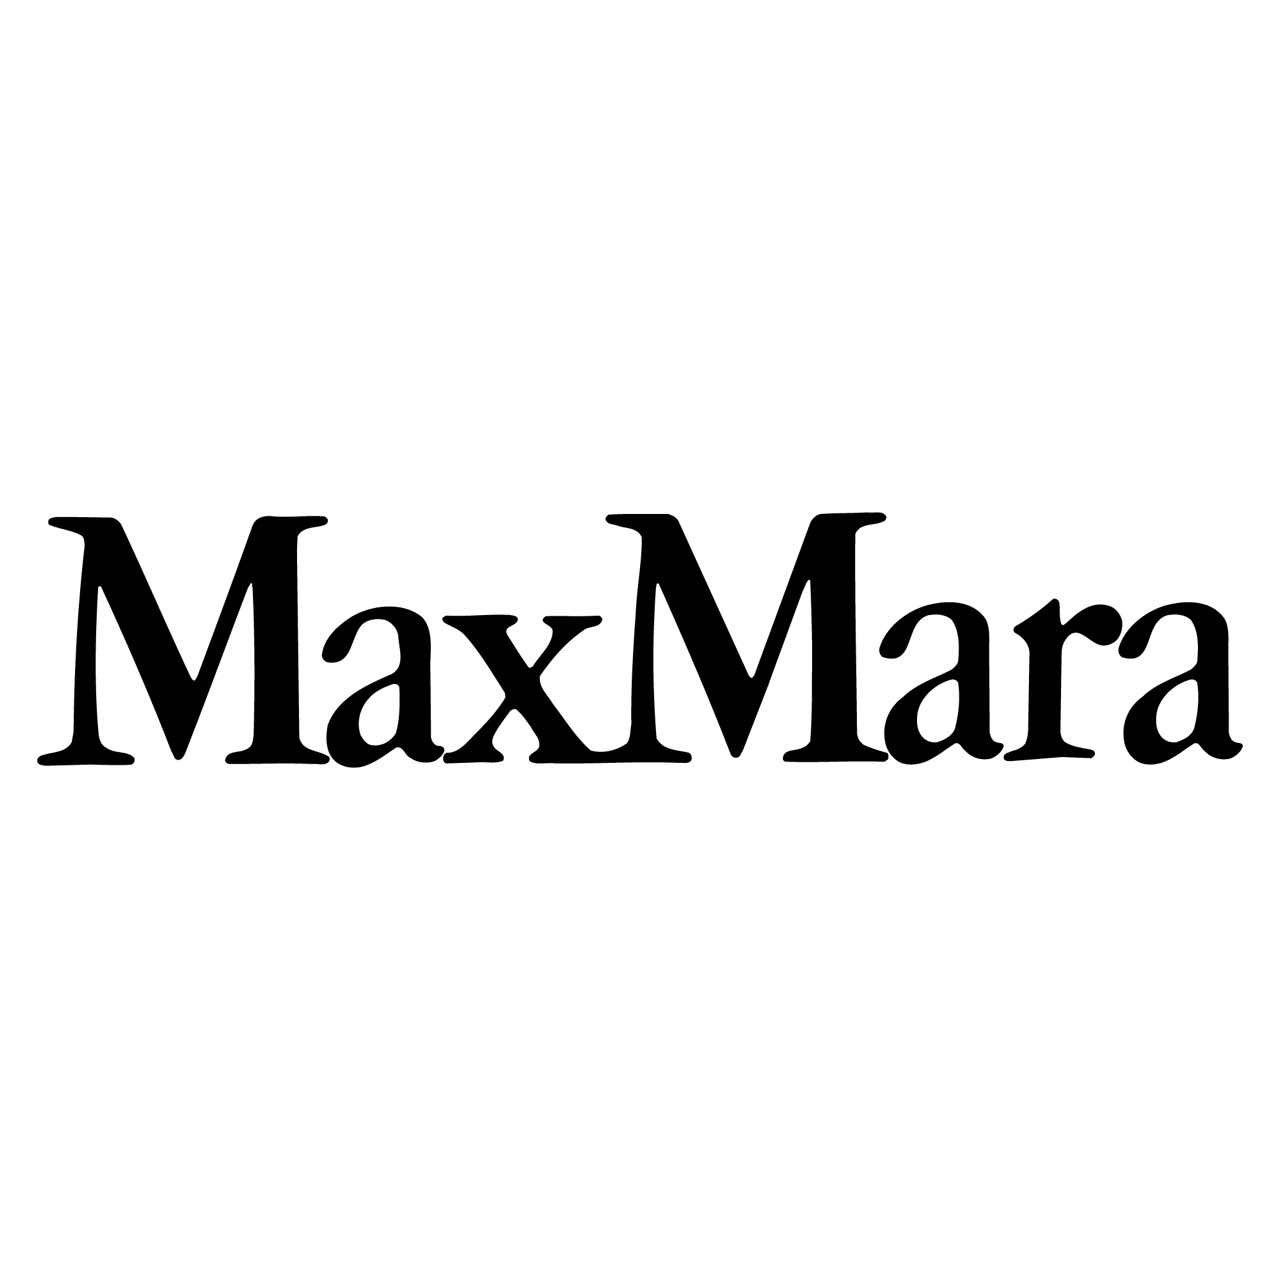 Max Mara - Abbigliamento donna Verona